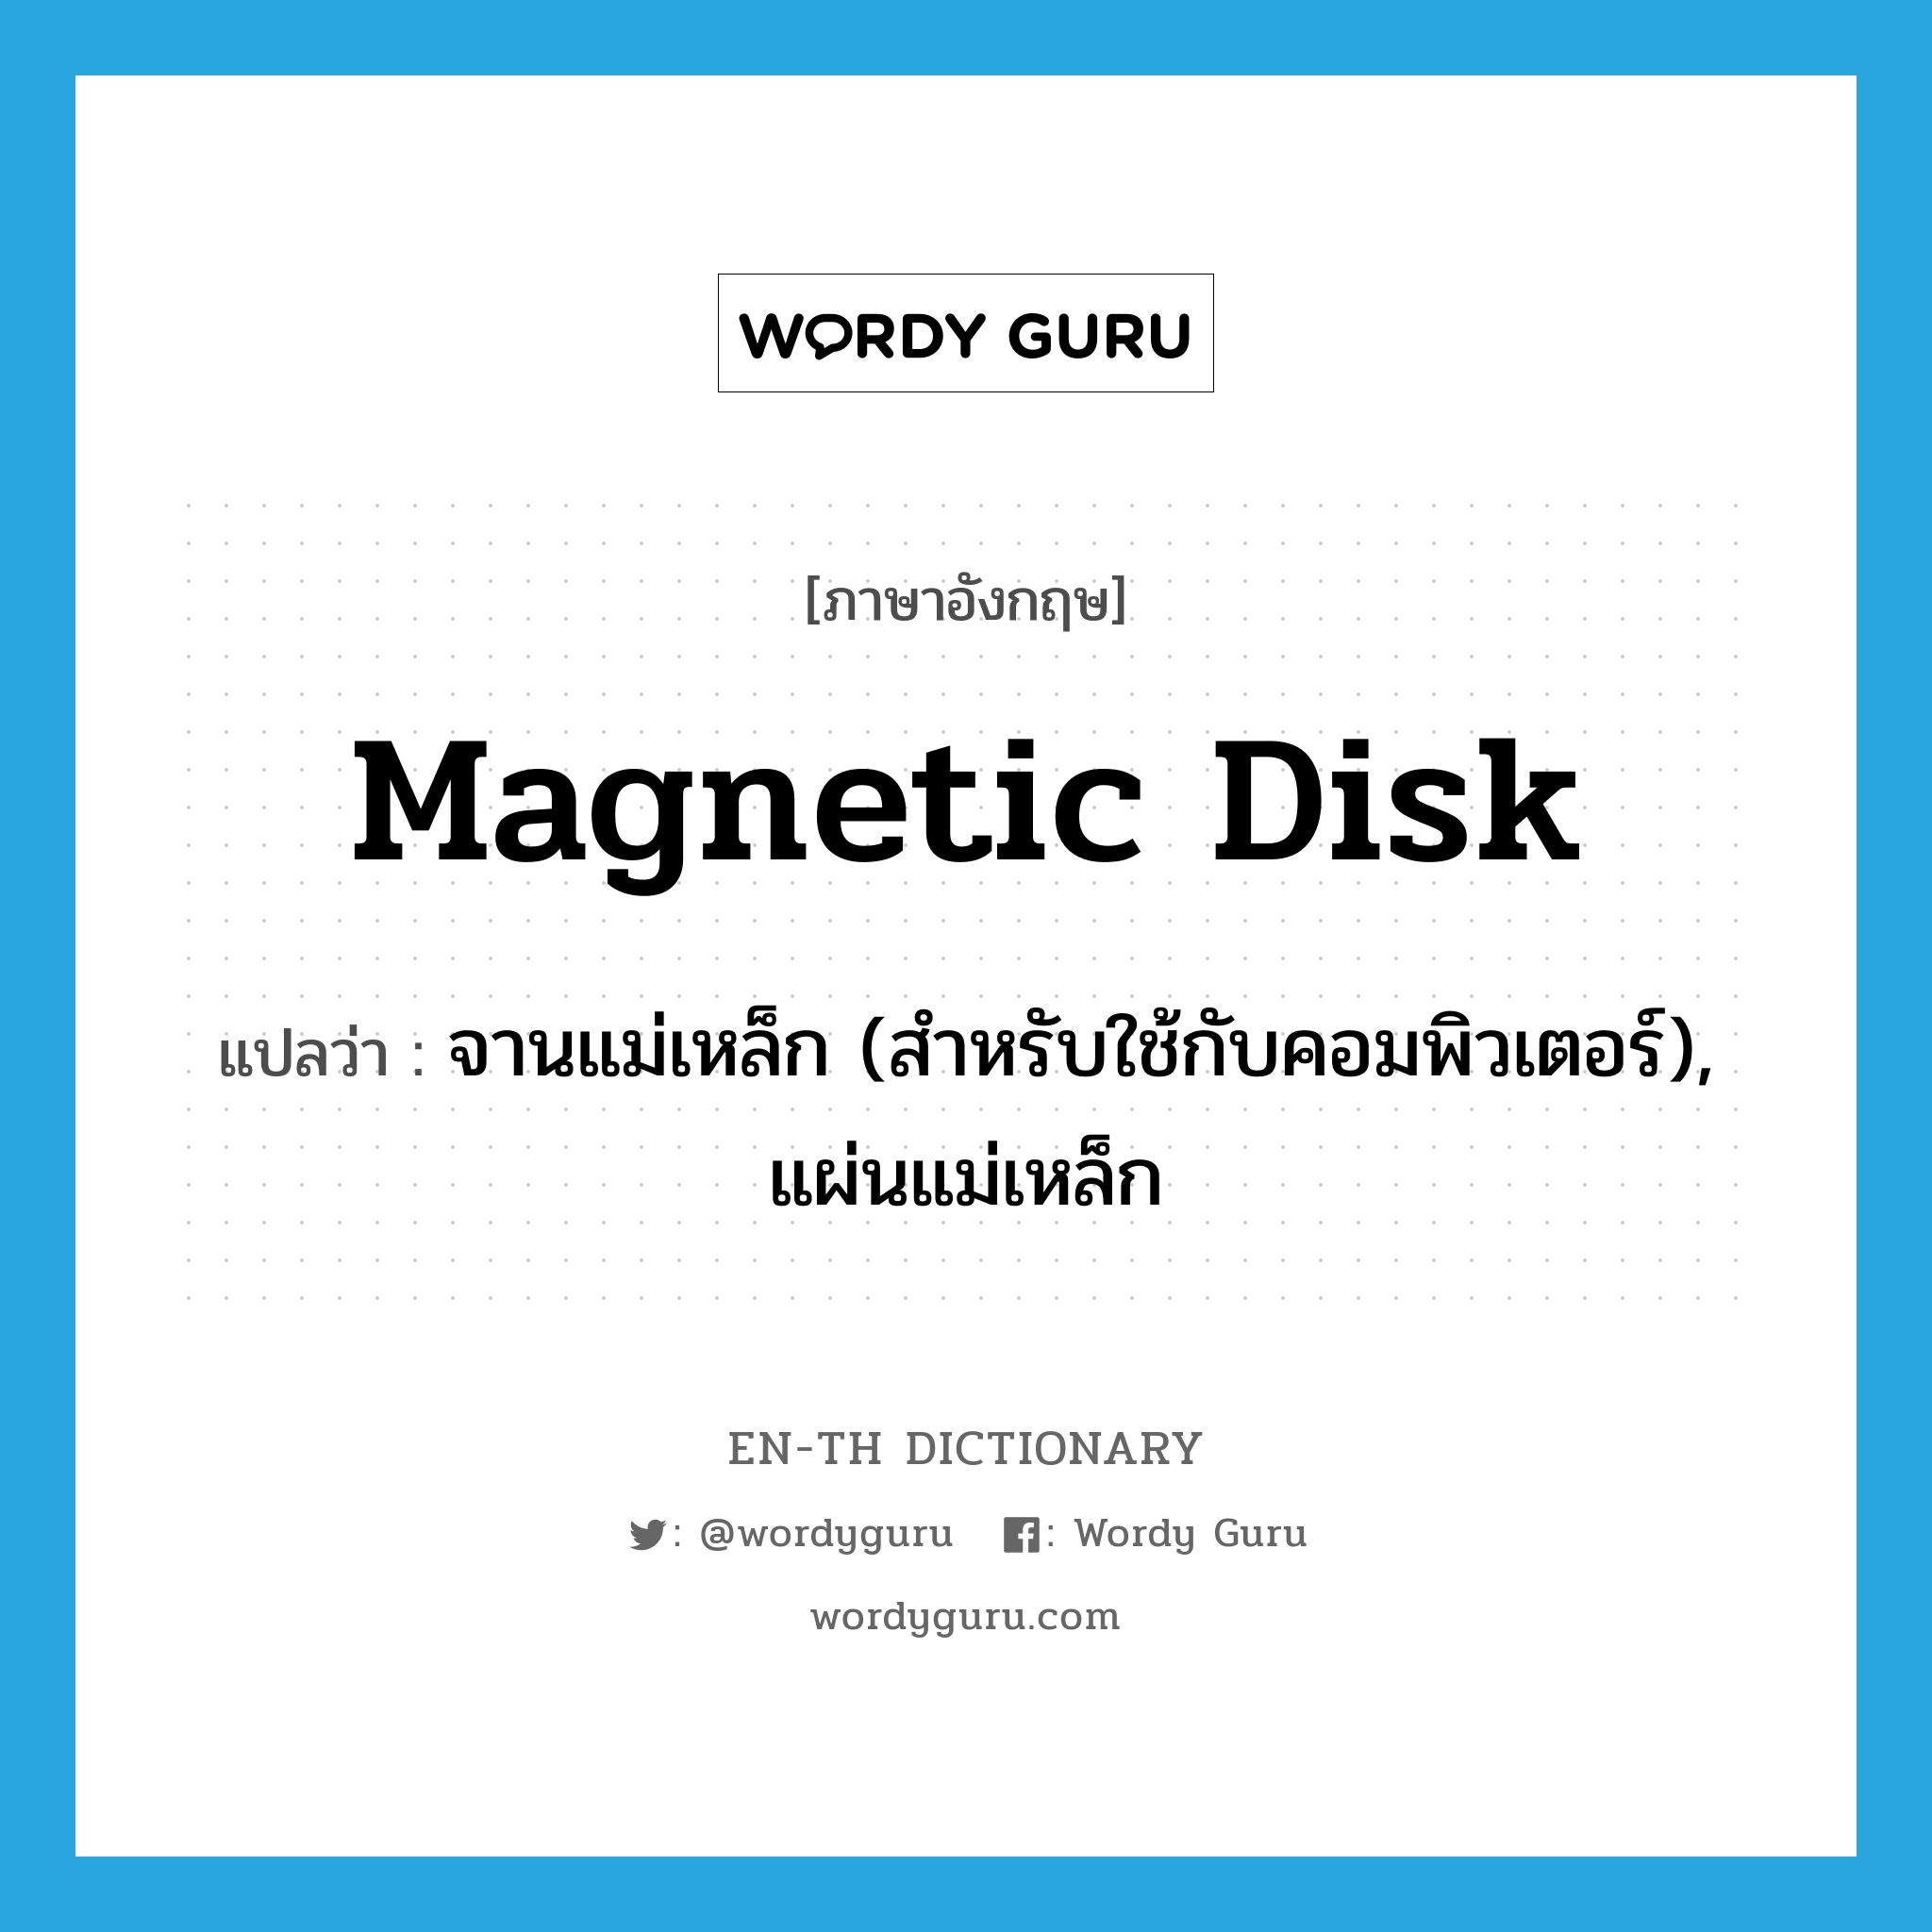 จานแม่เหล็ก (สำหรับใช้กับคอมพิวเตอร์), แผ่นแม่เหล็ก ภาษาอังกฤษ?, คำศัพท์ภาษาอังกฤษ จานแม่เหล็ก (สำหรับใช้กับคอมพิวเตอร์), แผ่นแม่เหล็ก แปลว่า magnetic disk ประเภท N หมวด N